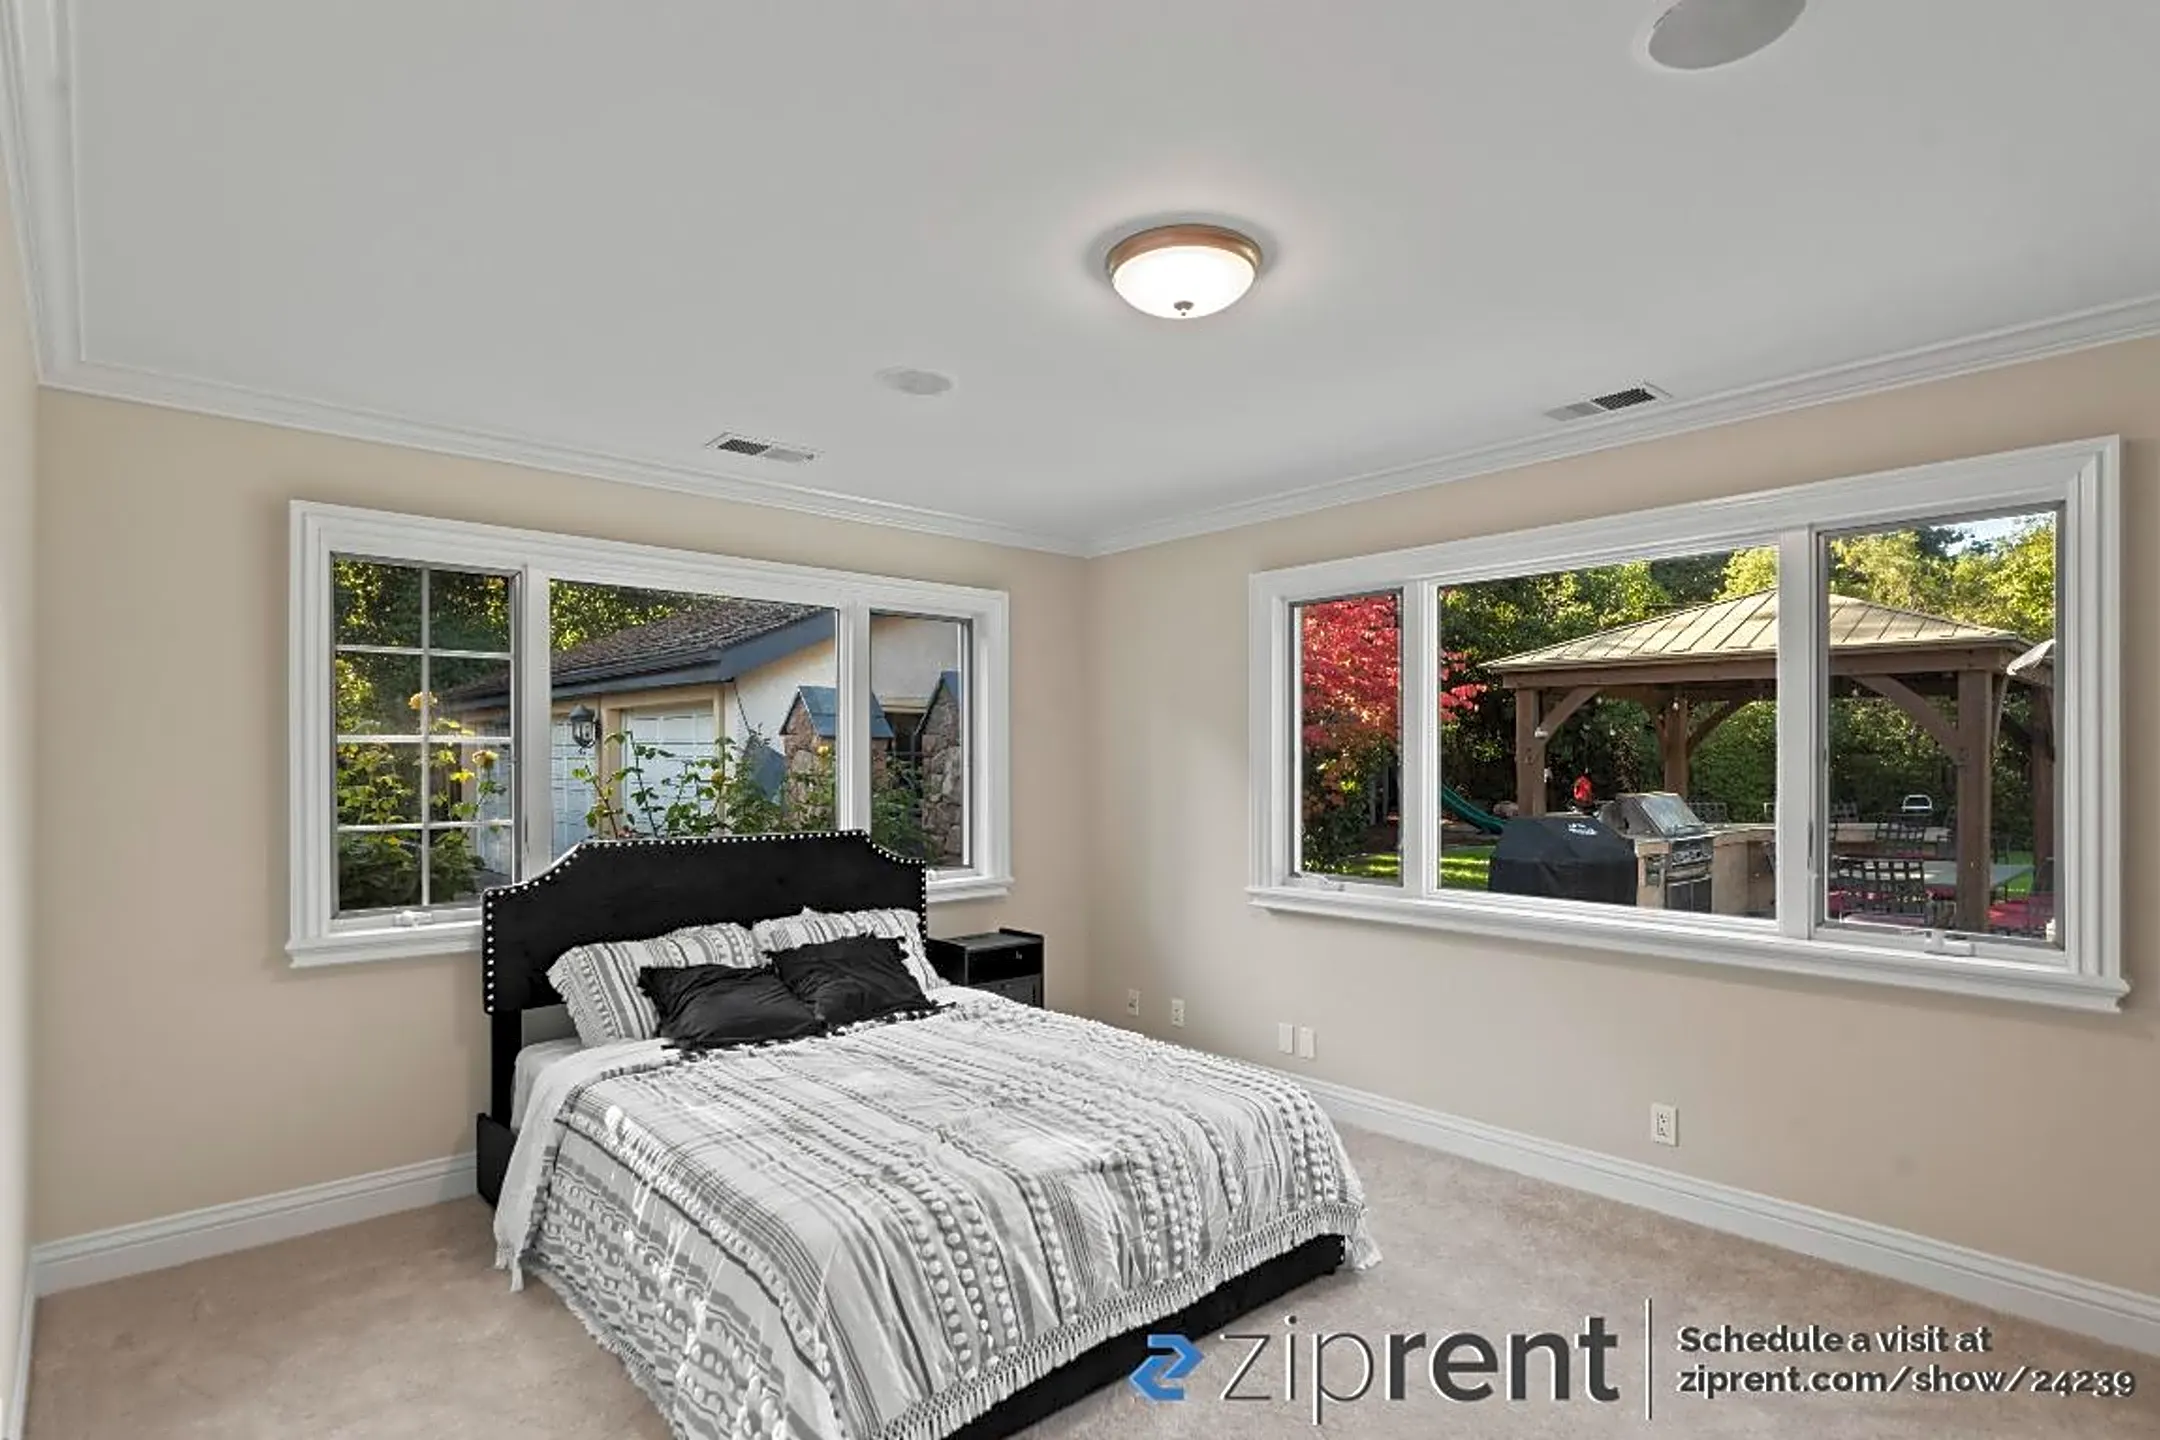 Bedroom - 167 Watkins Avenue - Atherton, CA